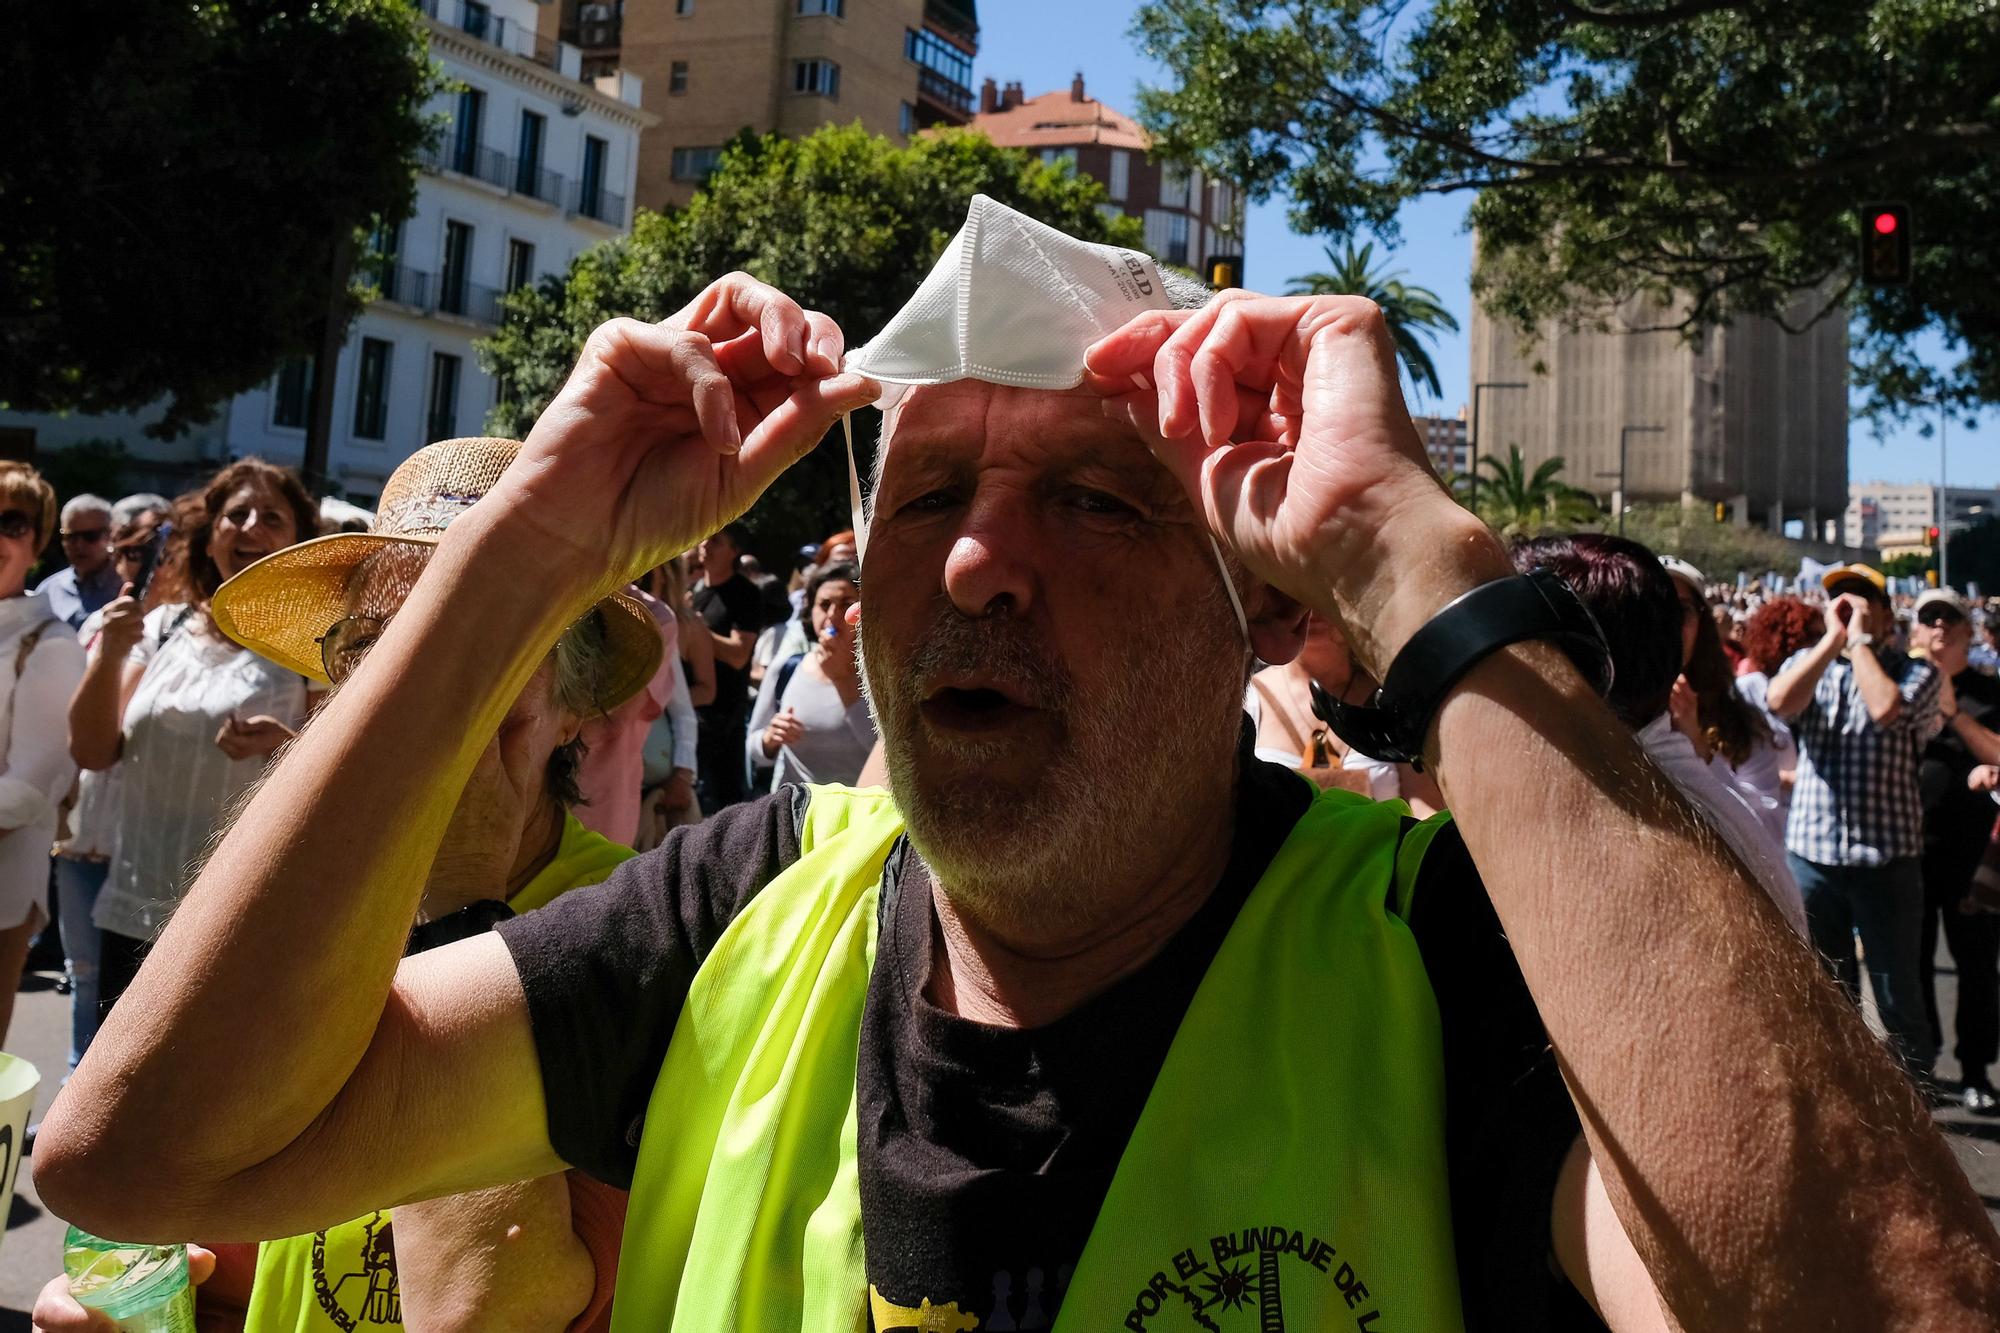 La manifestación en defensa de la Sanidad pública reúne a más de 7.000 personas en Málaga